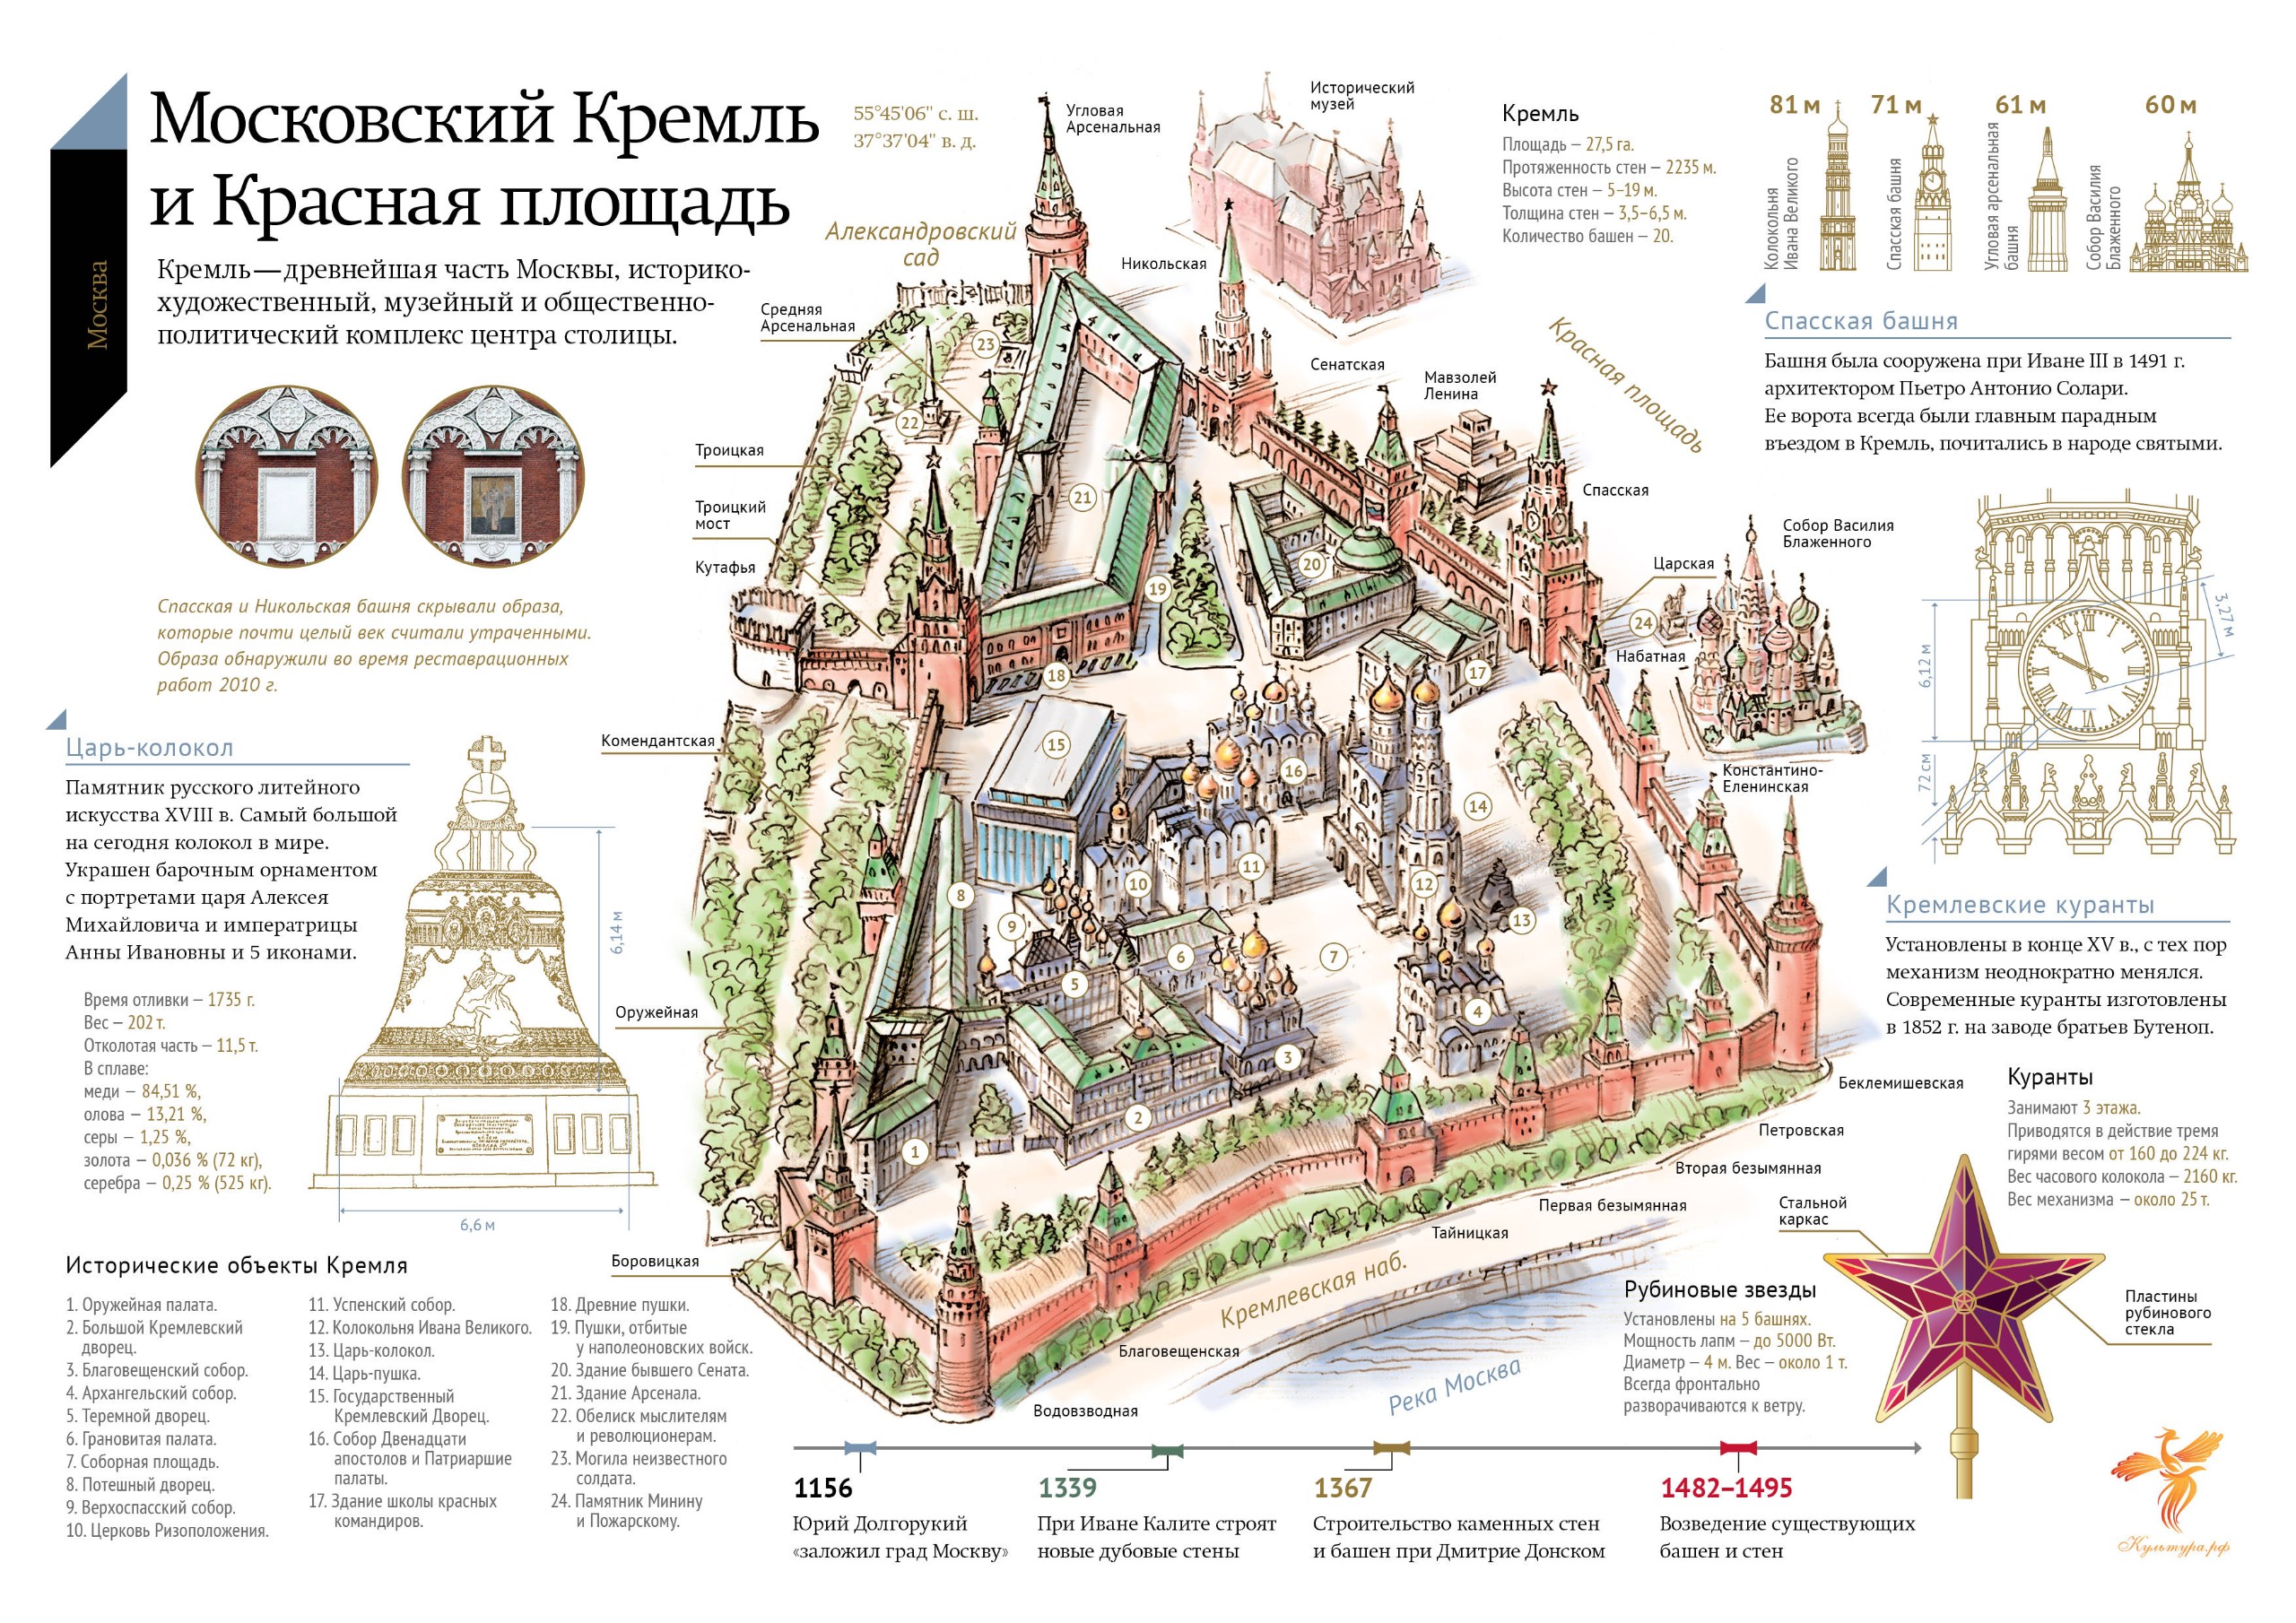 Схема Московского Кремля с названиями башен